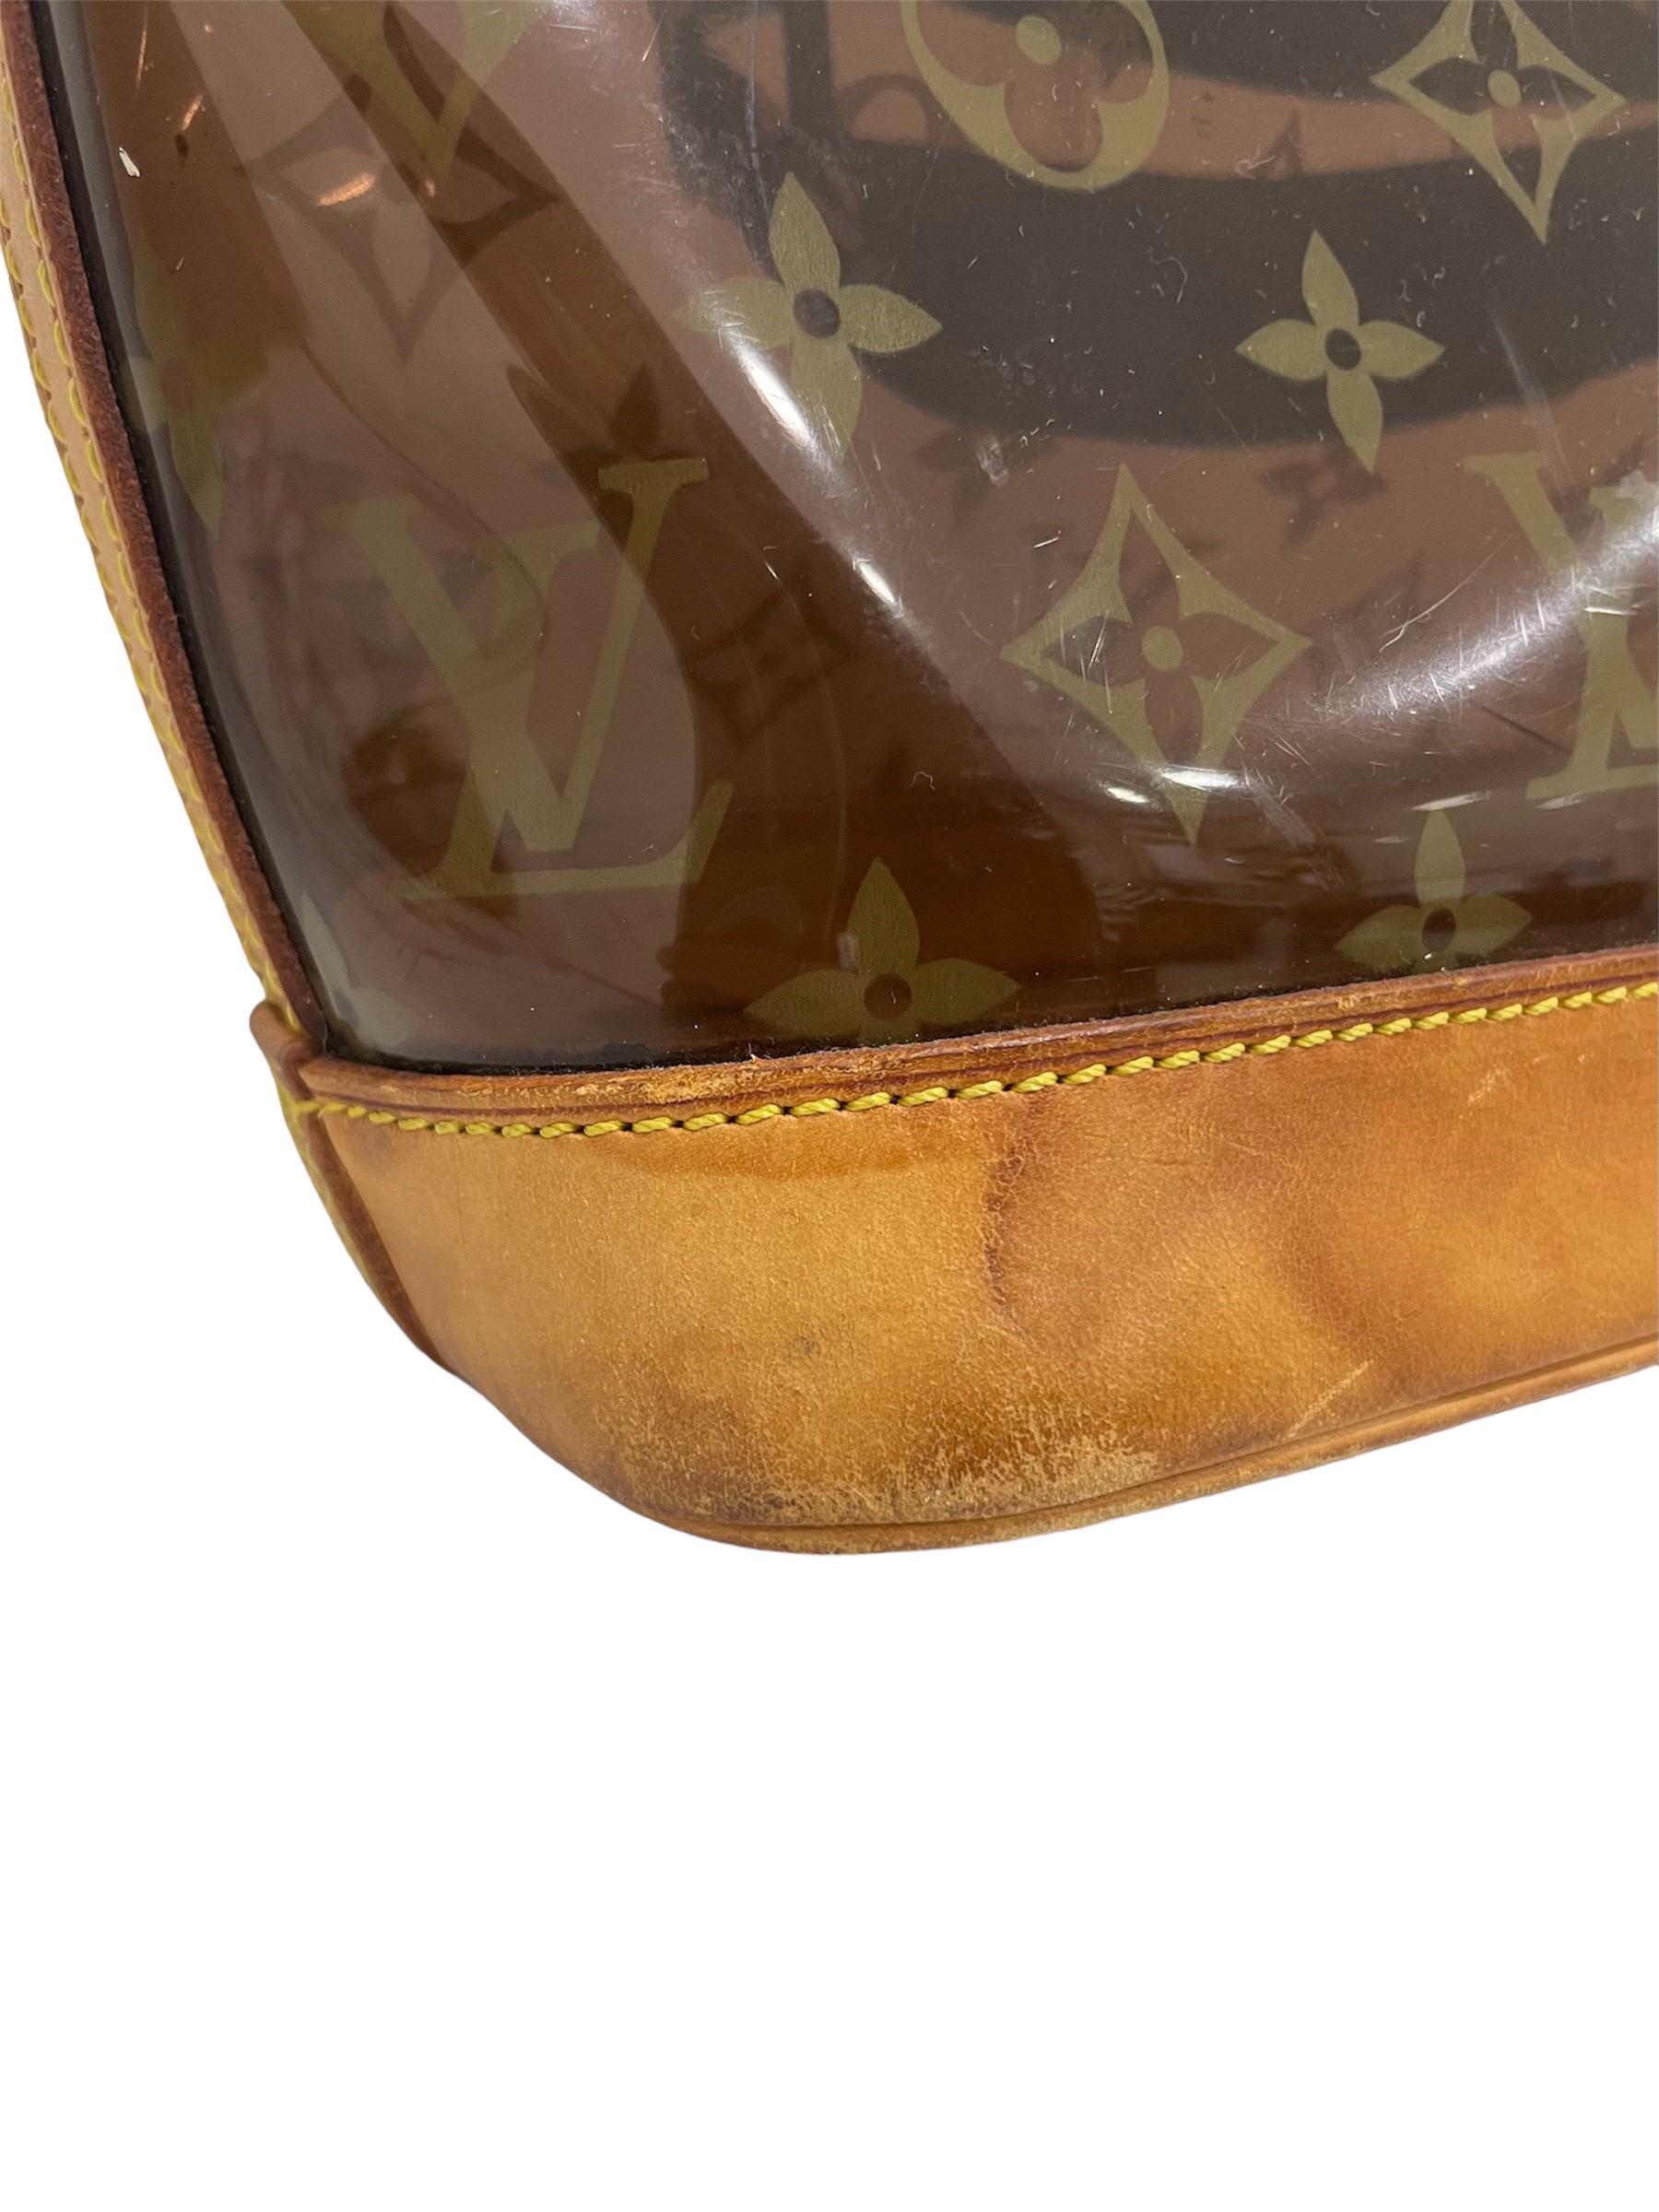 Borsa firmata Louis Vuitton, modello Cabas Ambre, misura PM, realizzata in vinile con stampa monogram, inserti in vacchetta e hardware dorati. Internamente rivestita solo su fondo in alcantara beige, abbastanza capiente. Munita di doppio manico in